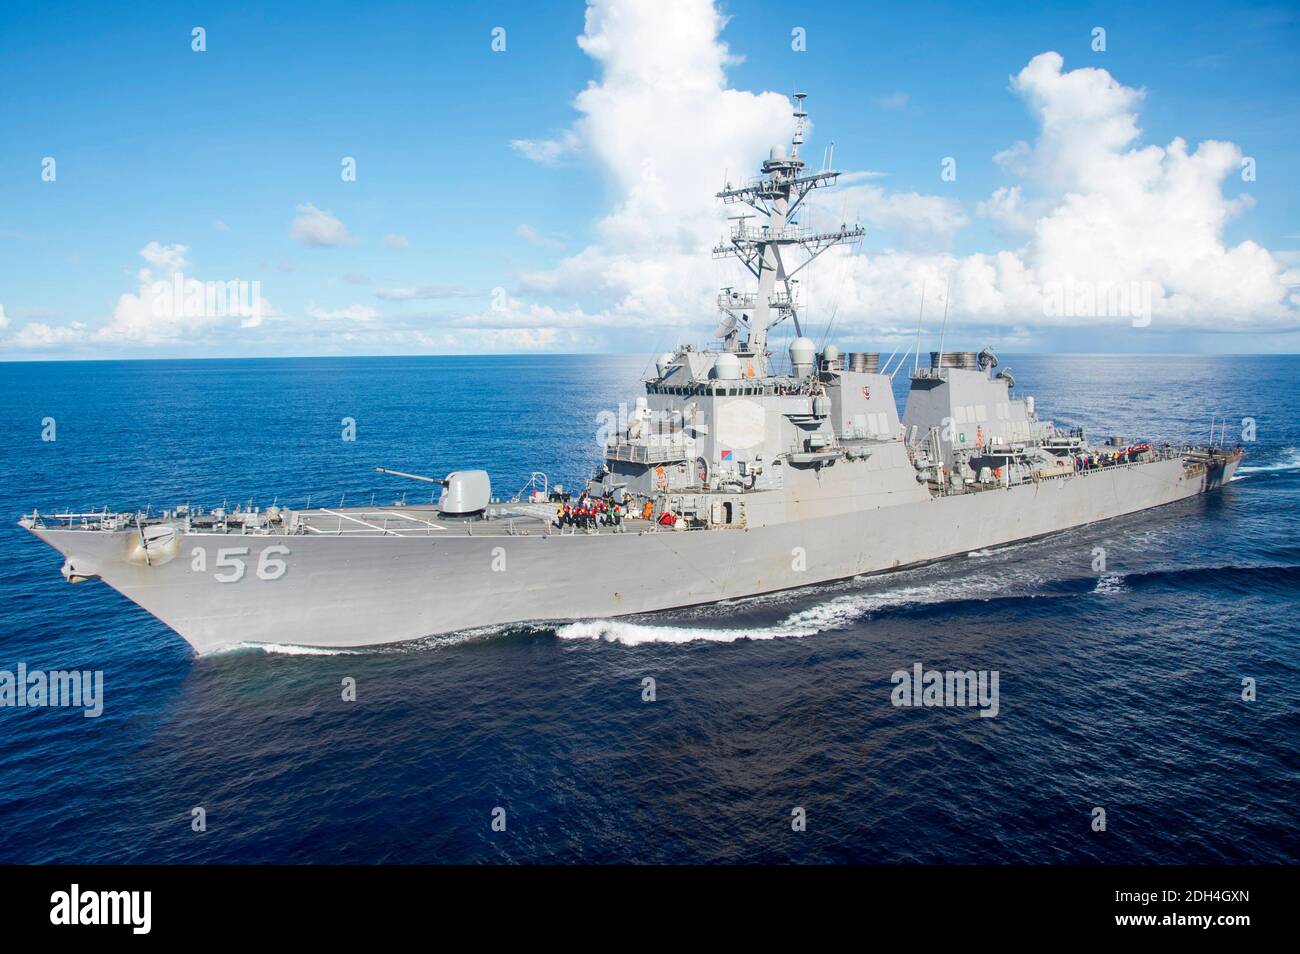 Hand out file photo - il cacciatorpediniere missilistico guidato di classe Arleigh Burke USS John S. McCain (DDG 56) si accaparrano a fianco della nave d'assalto anfibia USS Bonhomme Richard (LHD 6) per un rifornimento in mare (FAS). Mare delle Filippine, 14 giugno 2017. Dieci marinai della Marina statunitense sono scomparsi e cinque sono stati feriti dopo che un cacciatorpediniere statunitense e una petroliera si sono scontrati vicino a Singapore, dice la Marina militare. Il cacciatorpediniere missilistico guidato USS John S McCain stava navigando ad est di Singapore e si stava preparando a fermarsi nel porto quando si verificò la collisione con la nave bandiera liberiana. Foto di US Navy via ABACAPRESS.COM Foto Stock